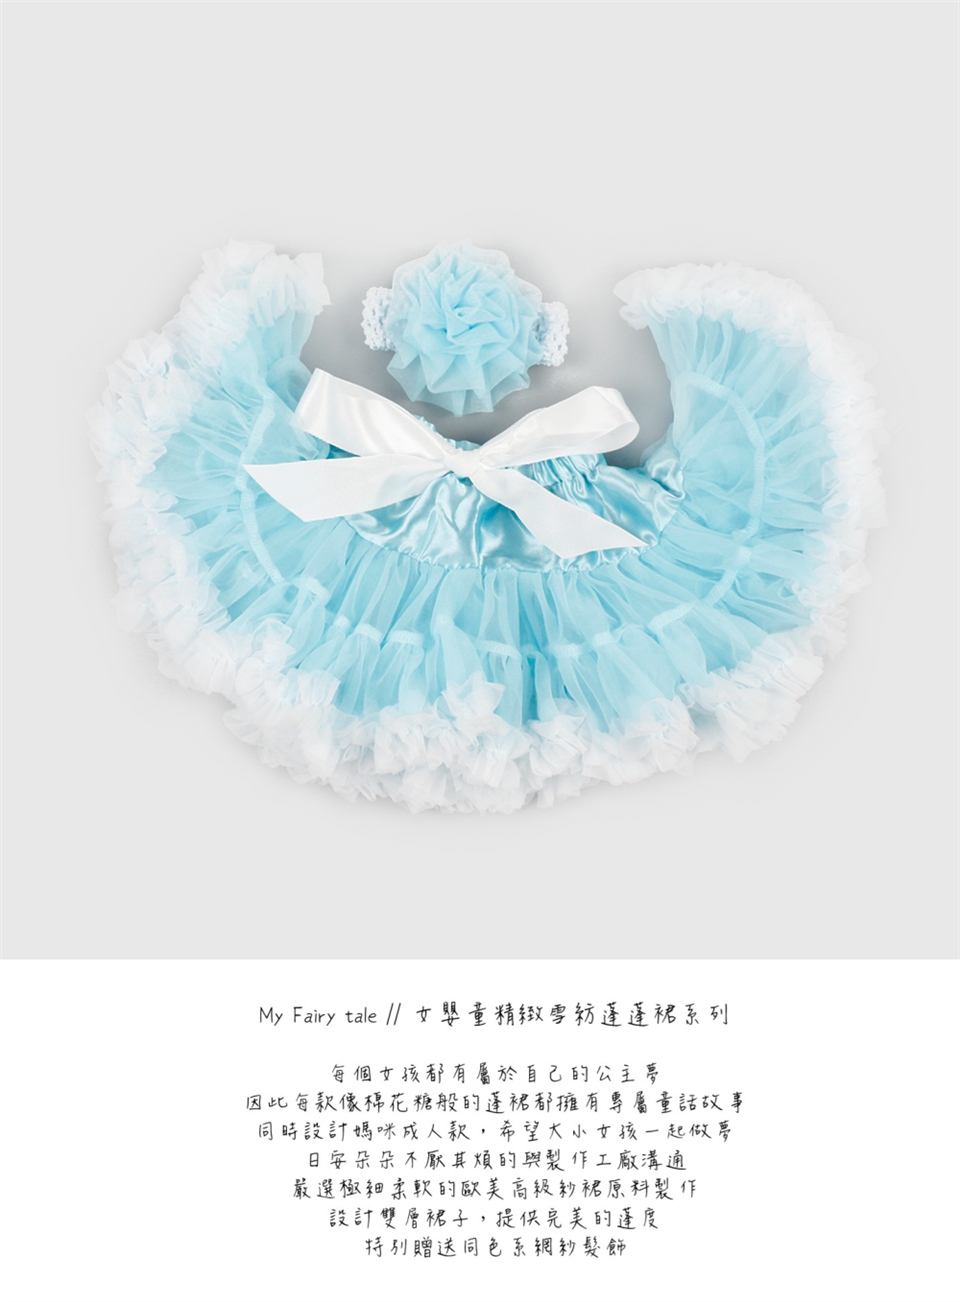 日安朵朵 女嬰童蓬蓬裙夢幻禮盒 - 冰雪奇緣 2-4歲(90cm)